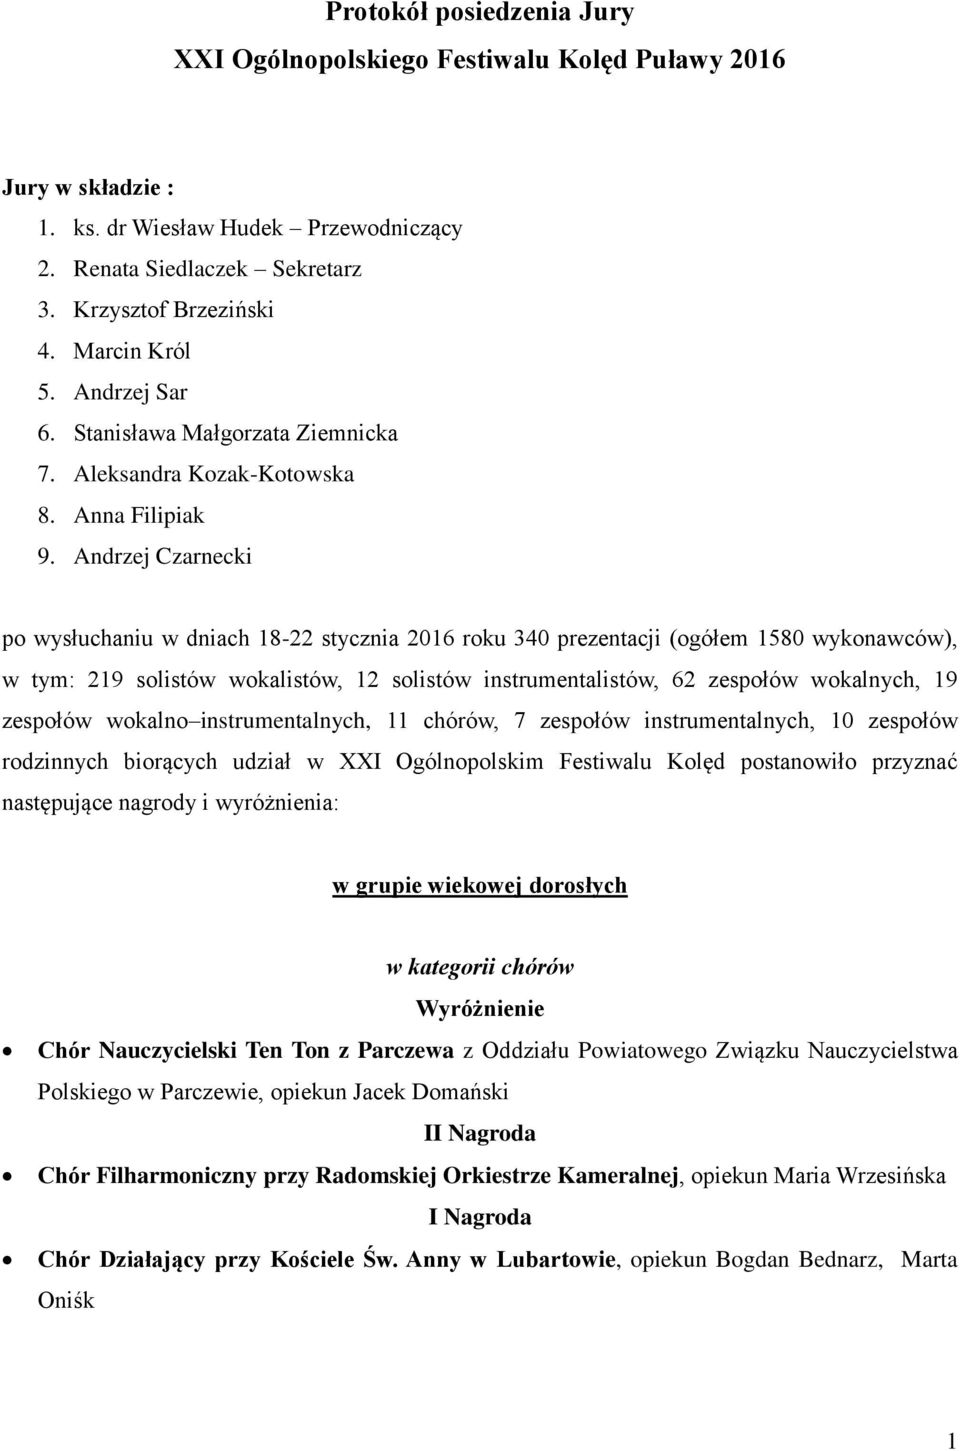 Andrzej Czarnecki po wysłuchaniu w dniach 18-22 stycznia 2016 roku 340 prezentacji (ogółem 1580 wykonawców), w tym: 219 solistów wokalistów, 12 solistów instrumentalistów, 62 zespołów wokalnych, 19